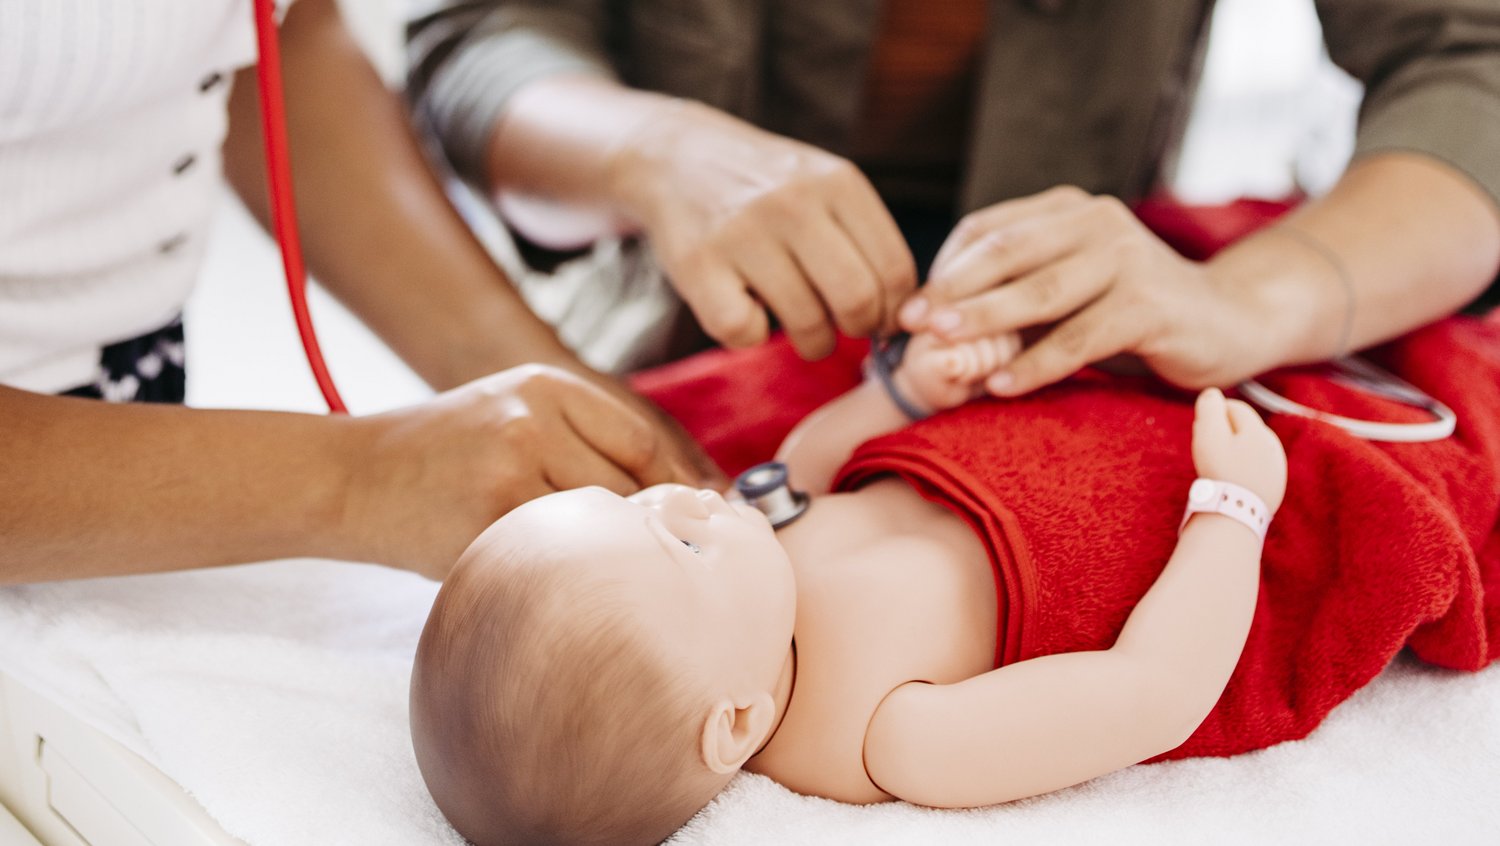 Eine Frau hört eine Babypuppe ab, welche in einer Neugeborenen-Reanimationseinheit liegt. Eine weitere Frau legt der Puppe einen Sensor an.